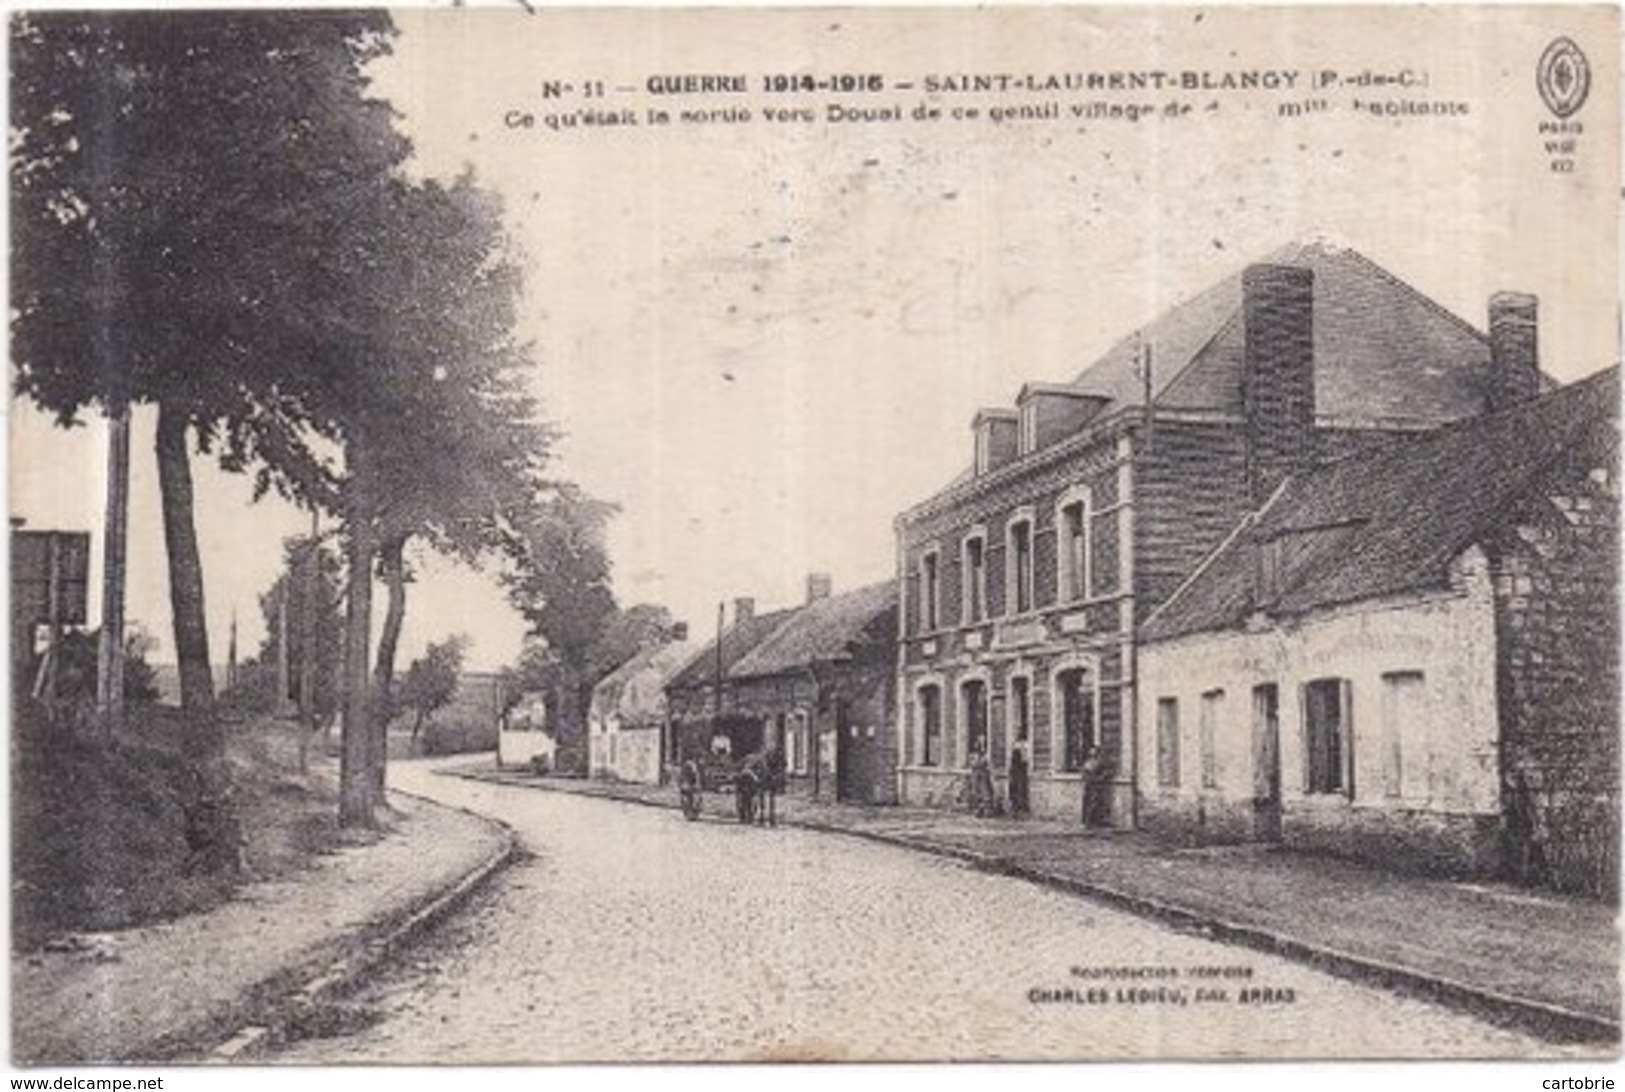 Dépt 62 - SAINT-LAURENT-BLANGY - Guerre 1914-1915 - Ce Qu'était La Sortie Vers Douai De Ce Gentil Village... (EN L'ÉTAT) - Saint Laurent Blangy